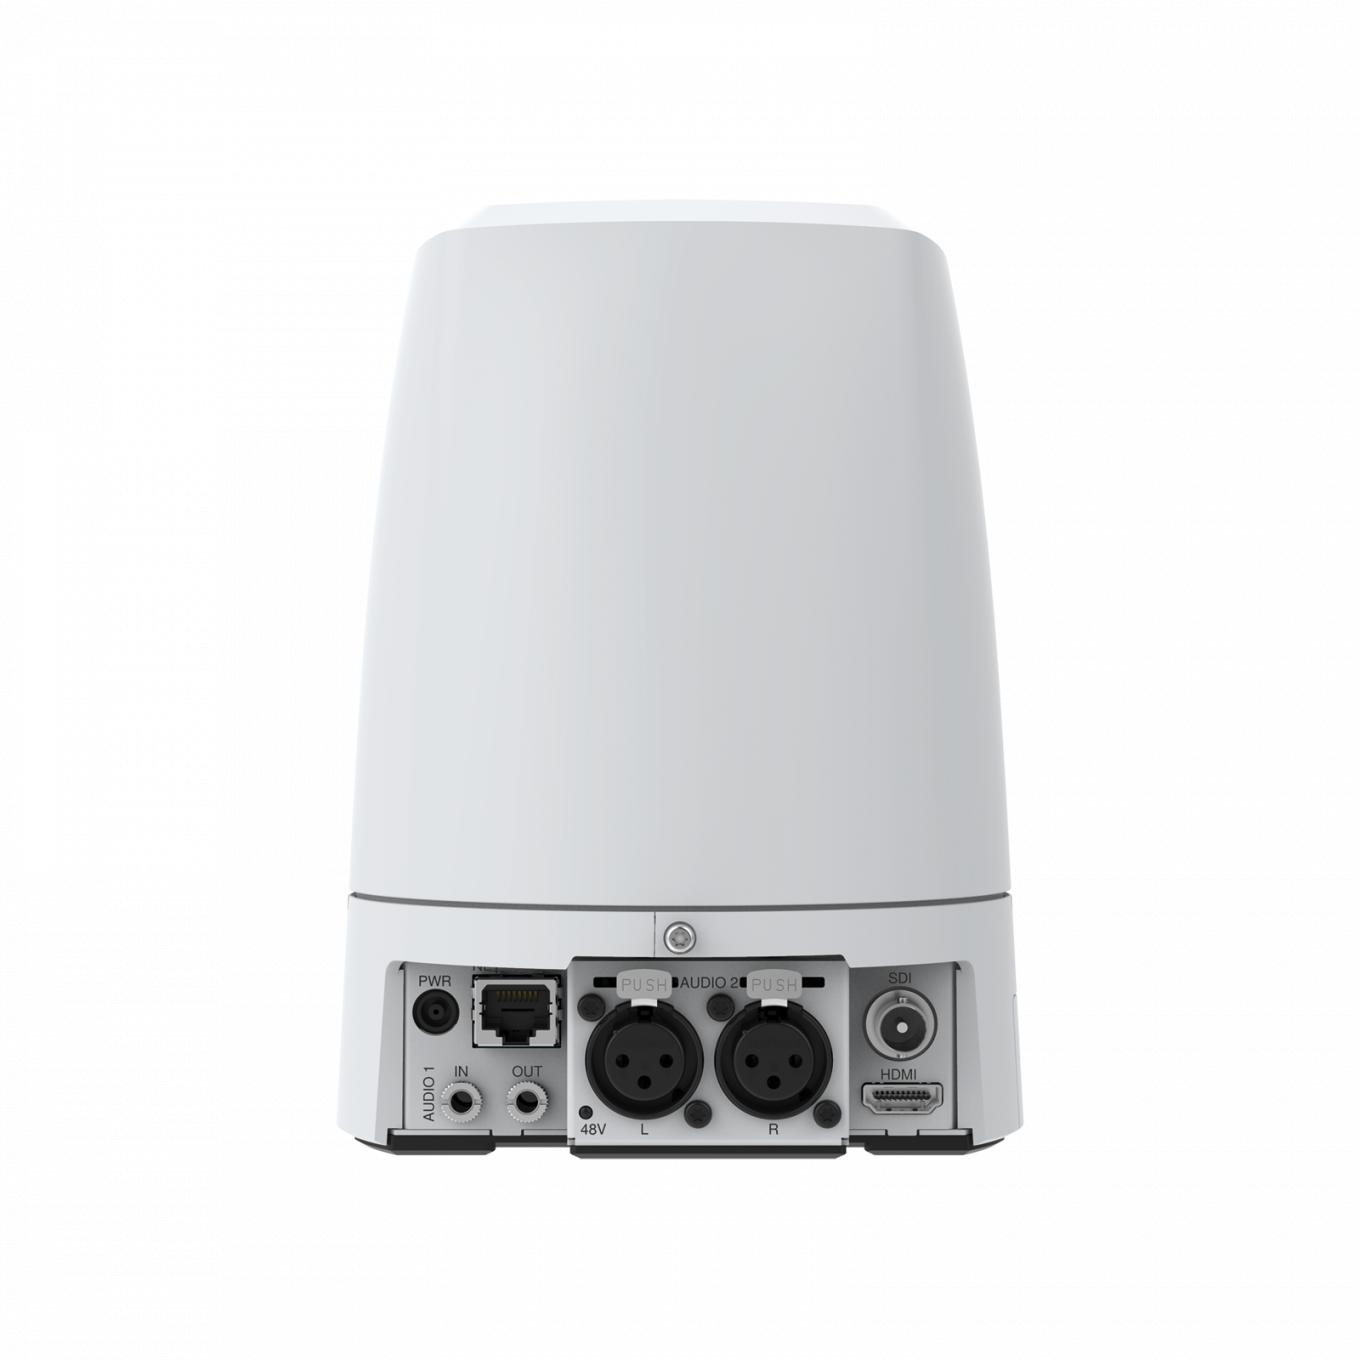 AXIS V5925 PTZ Network Camera는 VISCA 및 VISCA over IP 지원을 제공합니다.